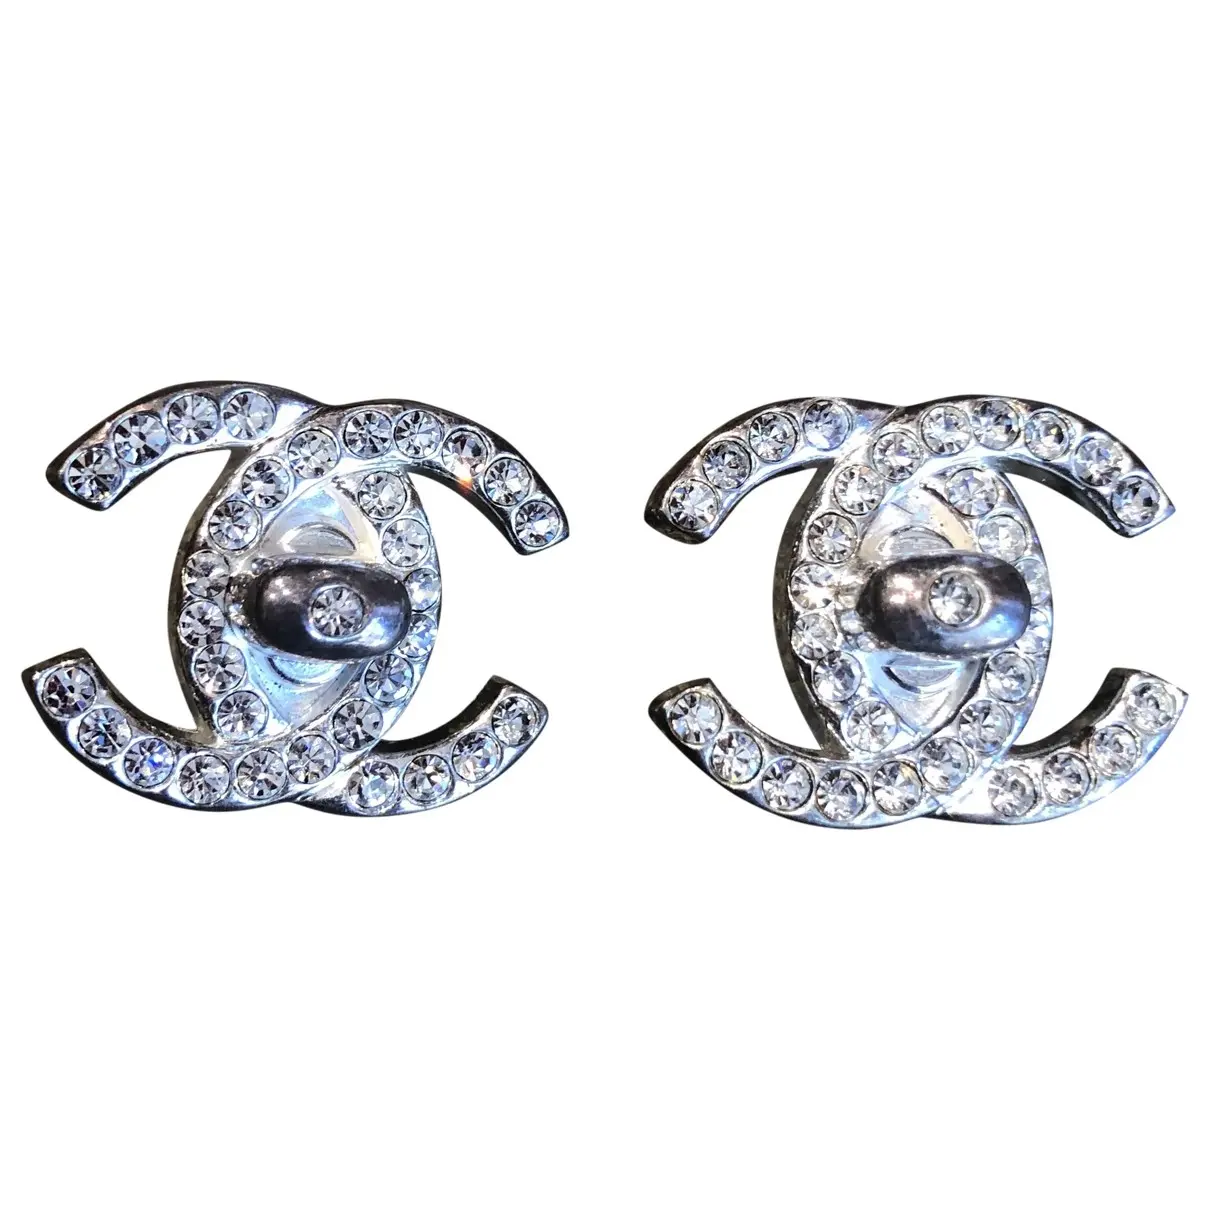 CC earrings Chanel